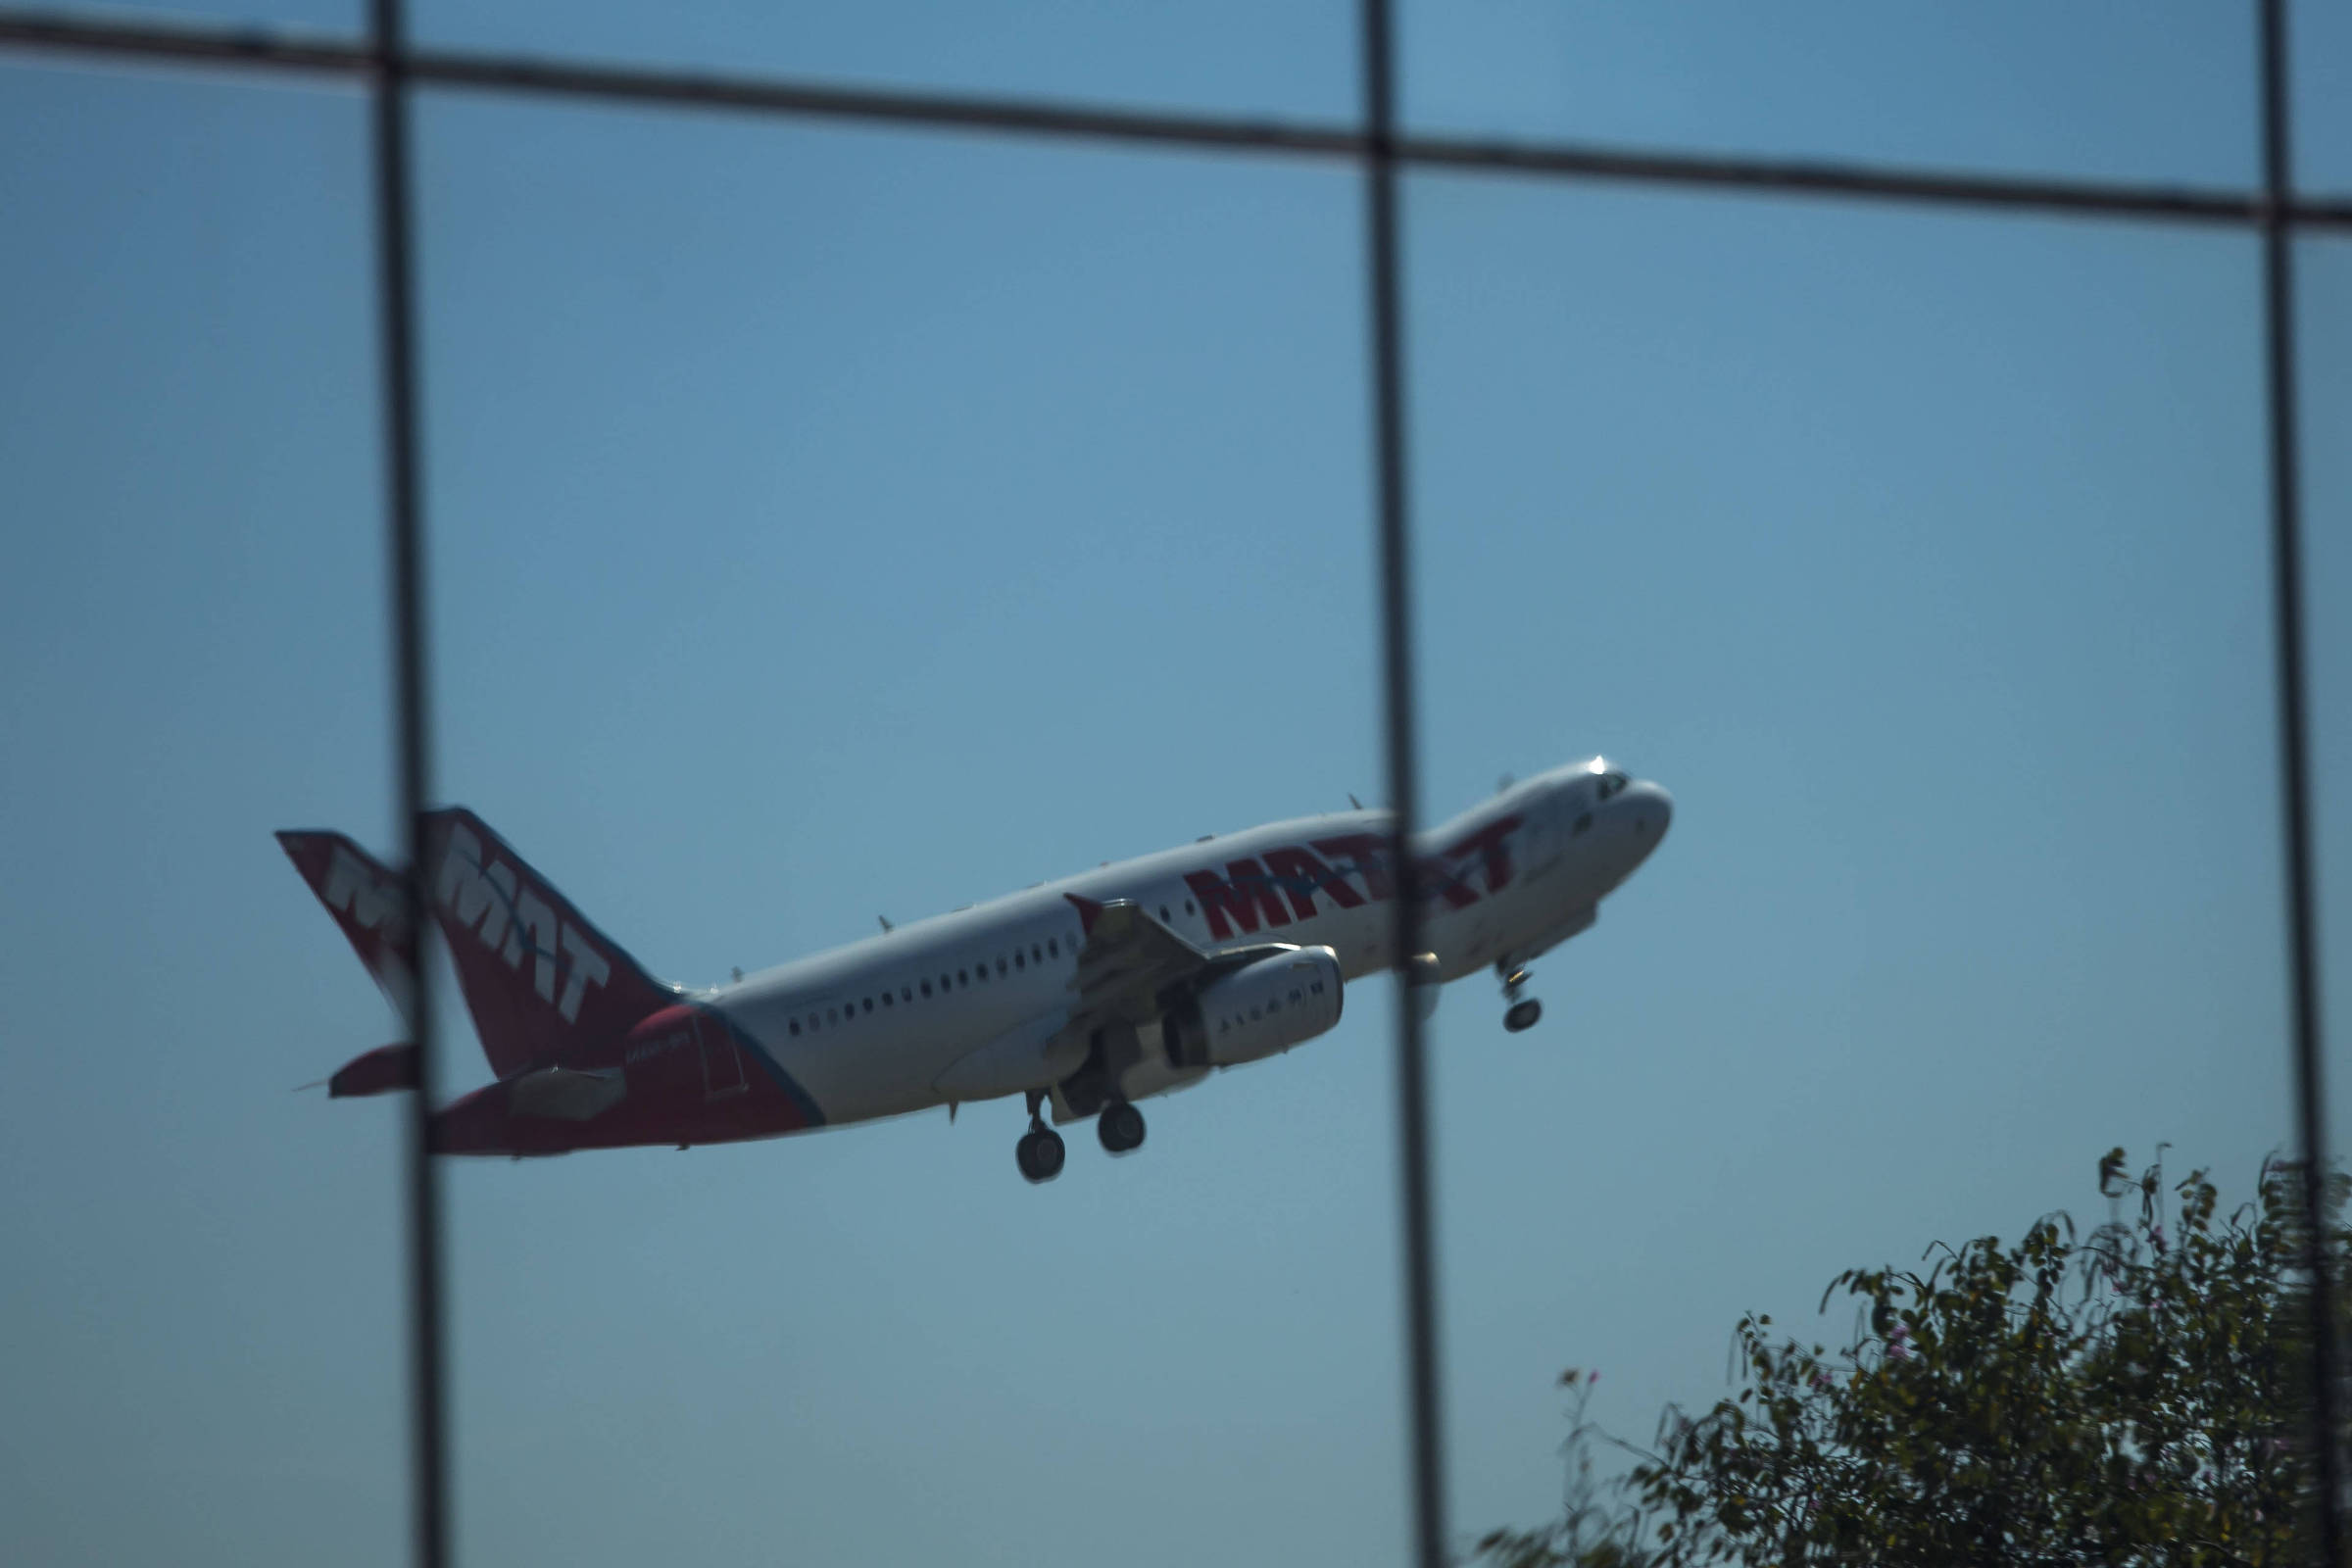 Passagem aérea está pelo menos 50% mais cara - 03/06/2022 - Mercado - Folha